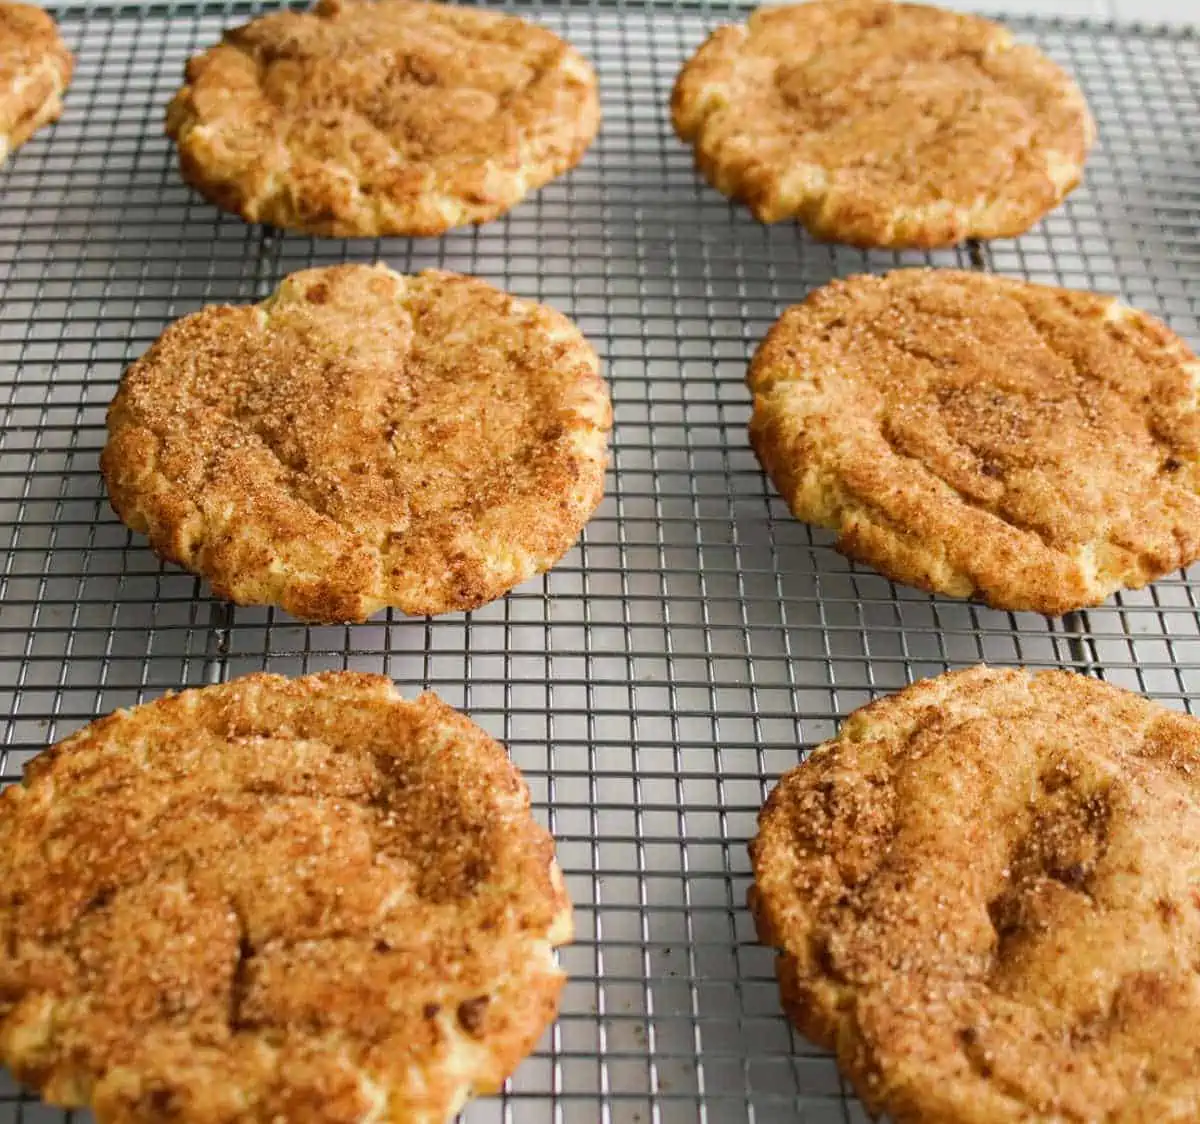 Cooling rack with vegan snickerdoodle cookies.